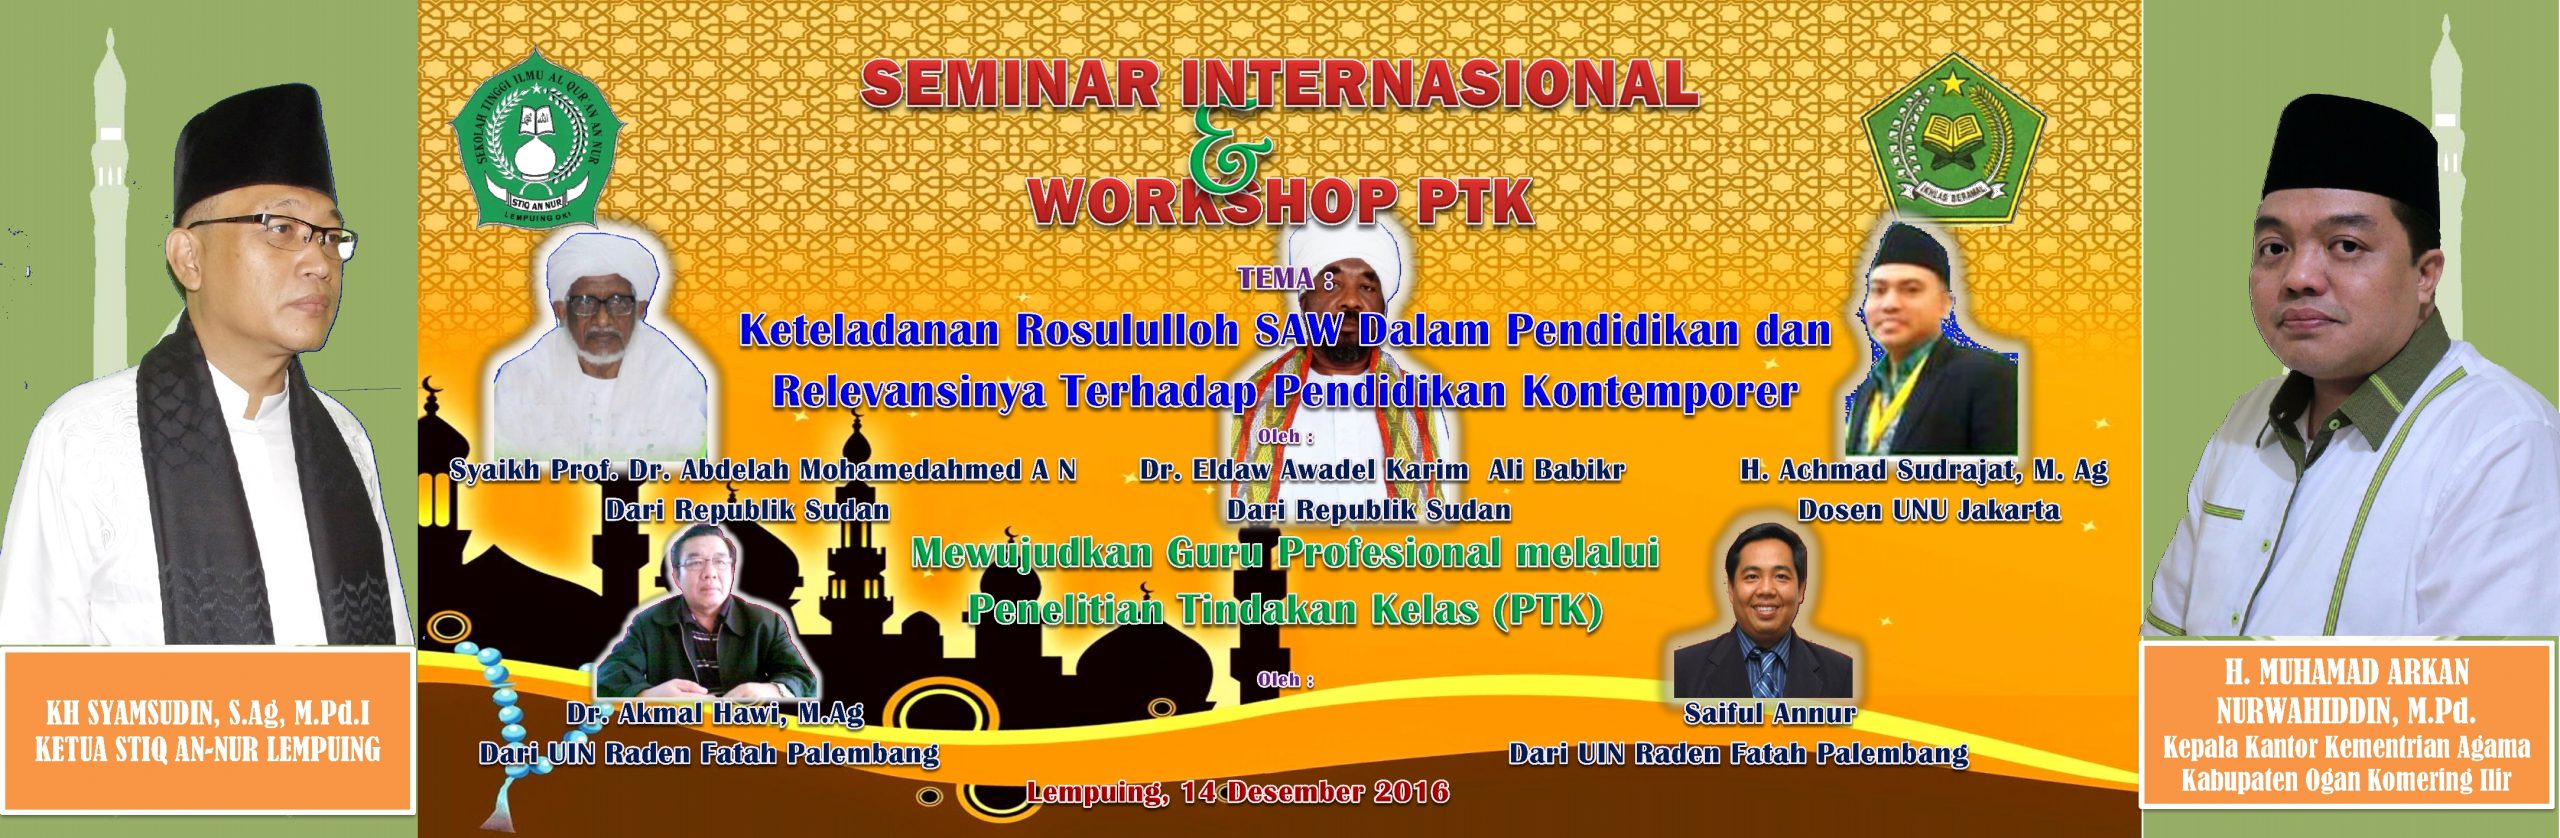 Seminar internasional